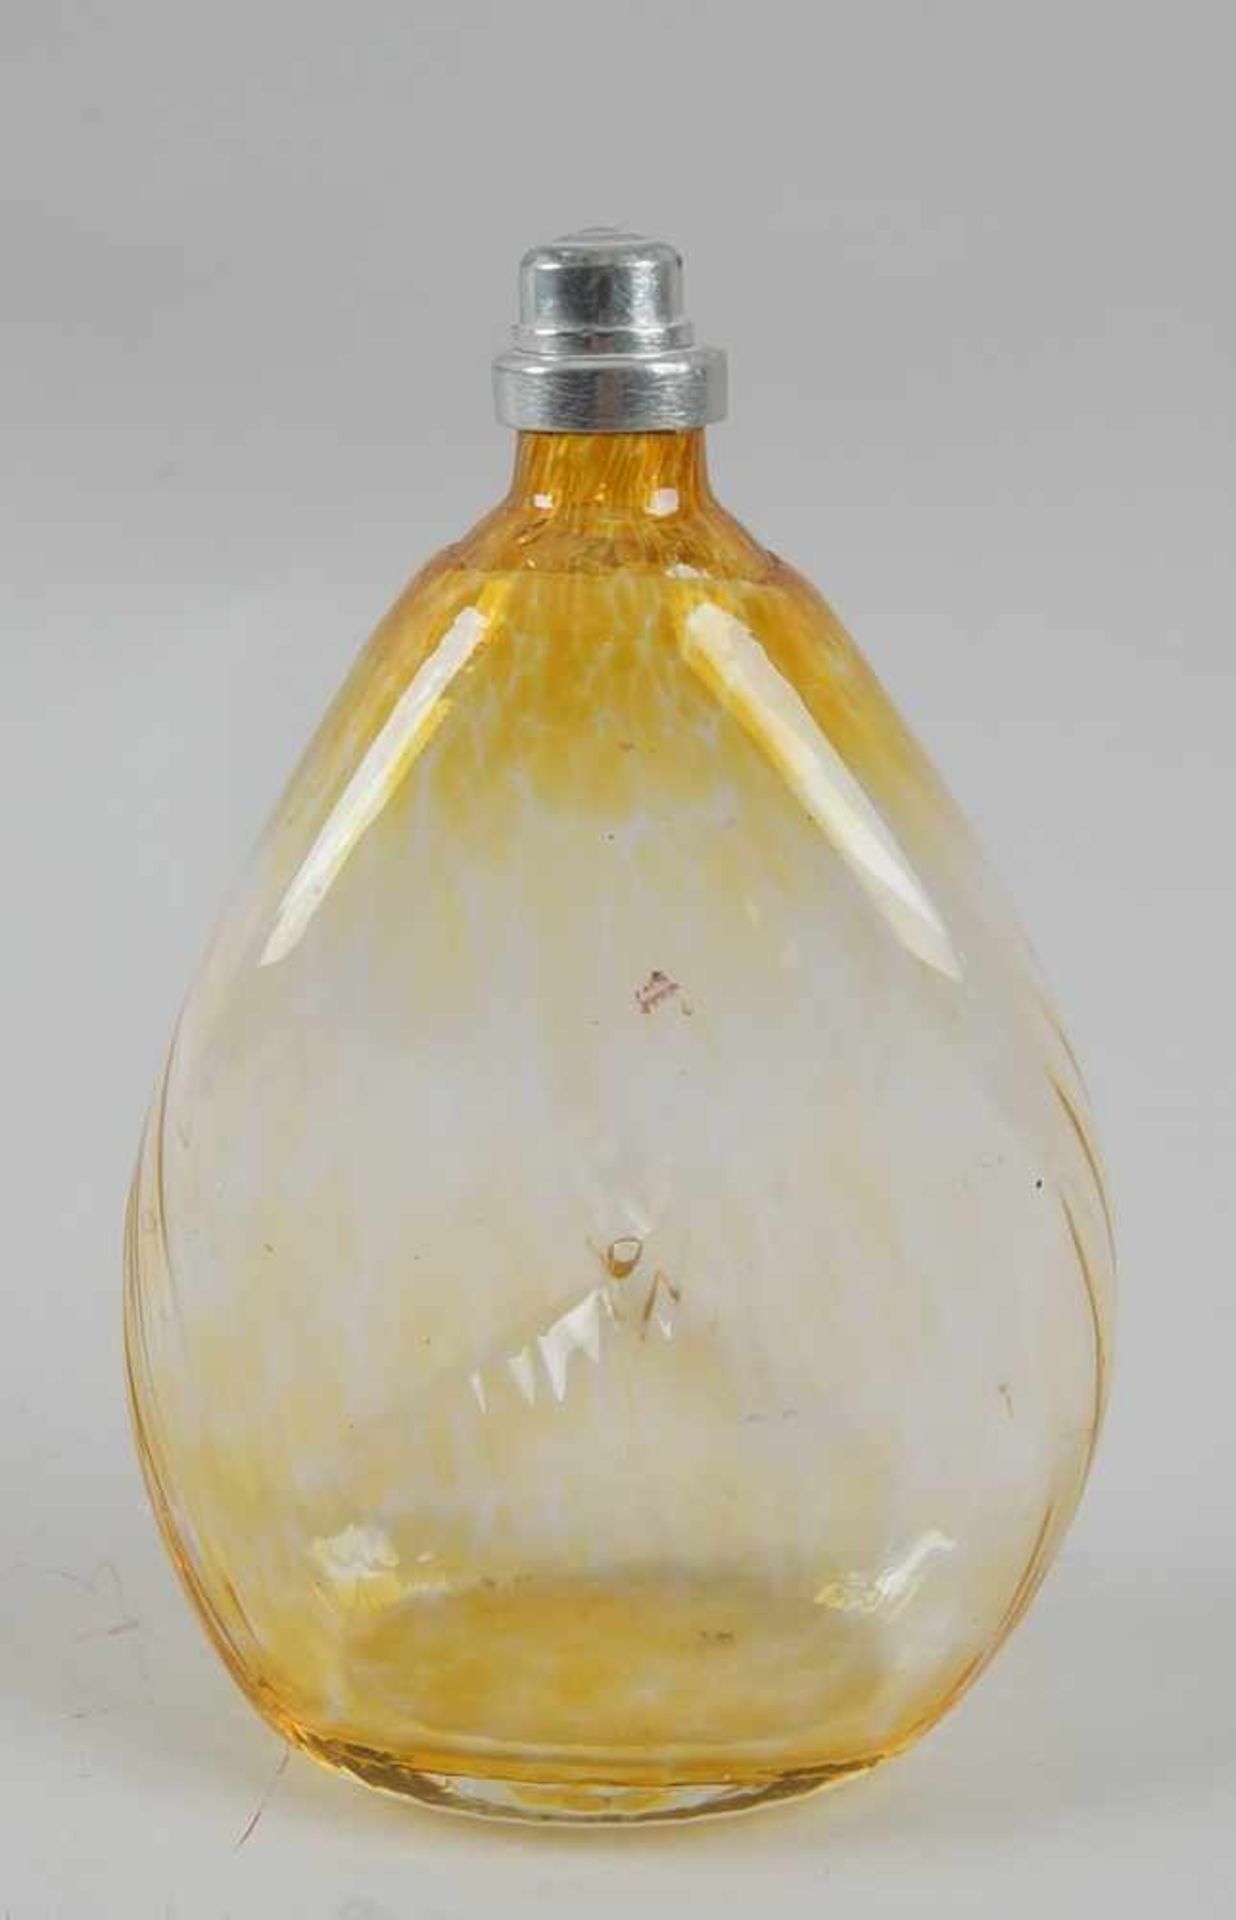 Gramsacher Nabelflasche, Tirol, ~ 1900, gelbliches Glas, H 18 cm - Bild 3 aus 7